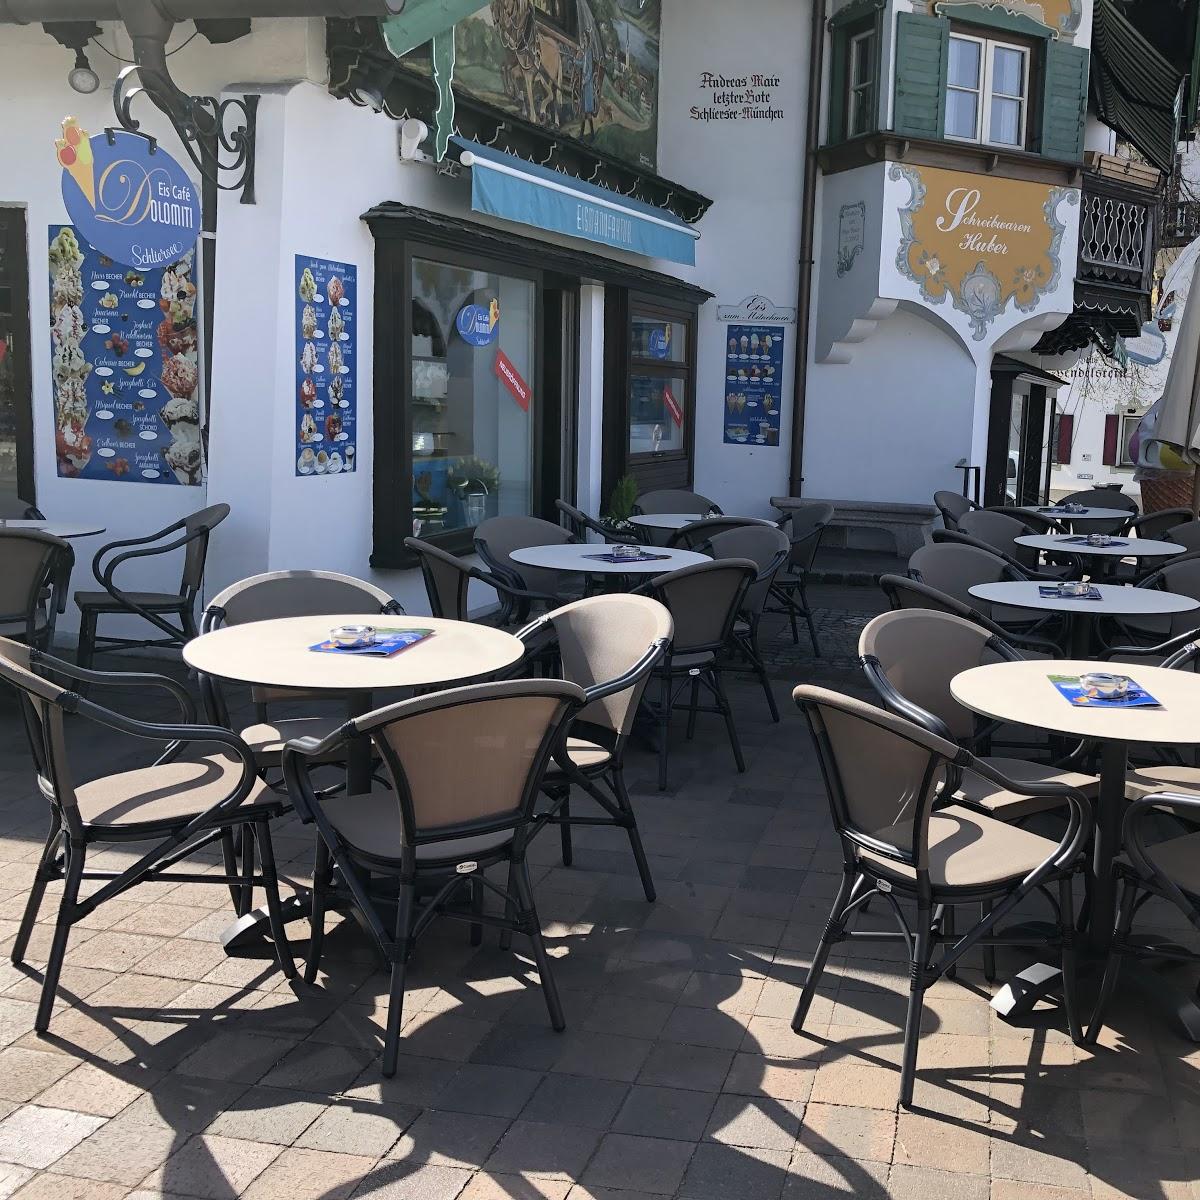 Restaurant "Dolomiti" in Schliersee